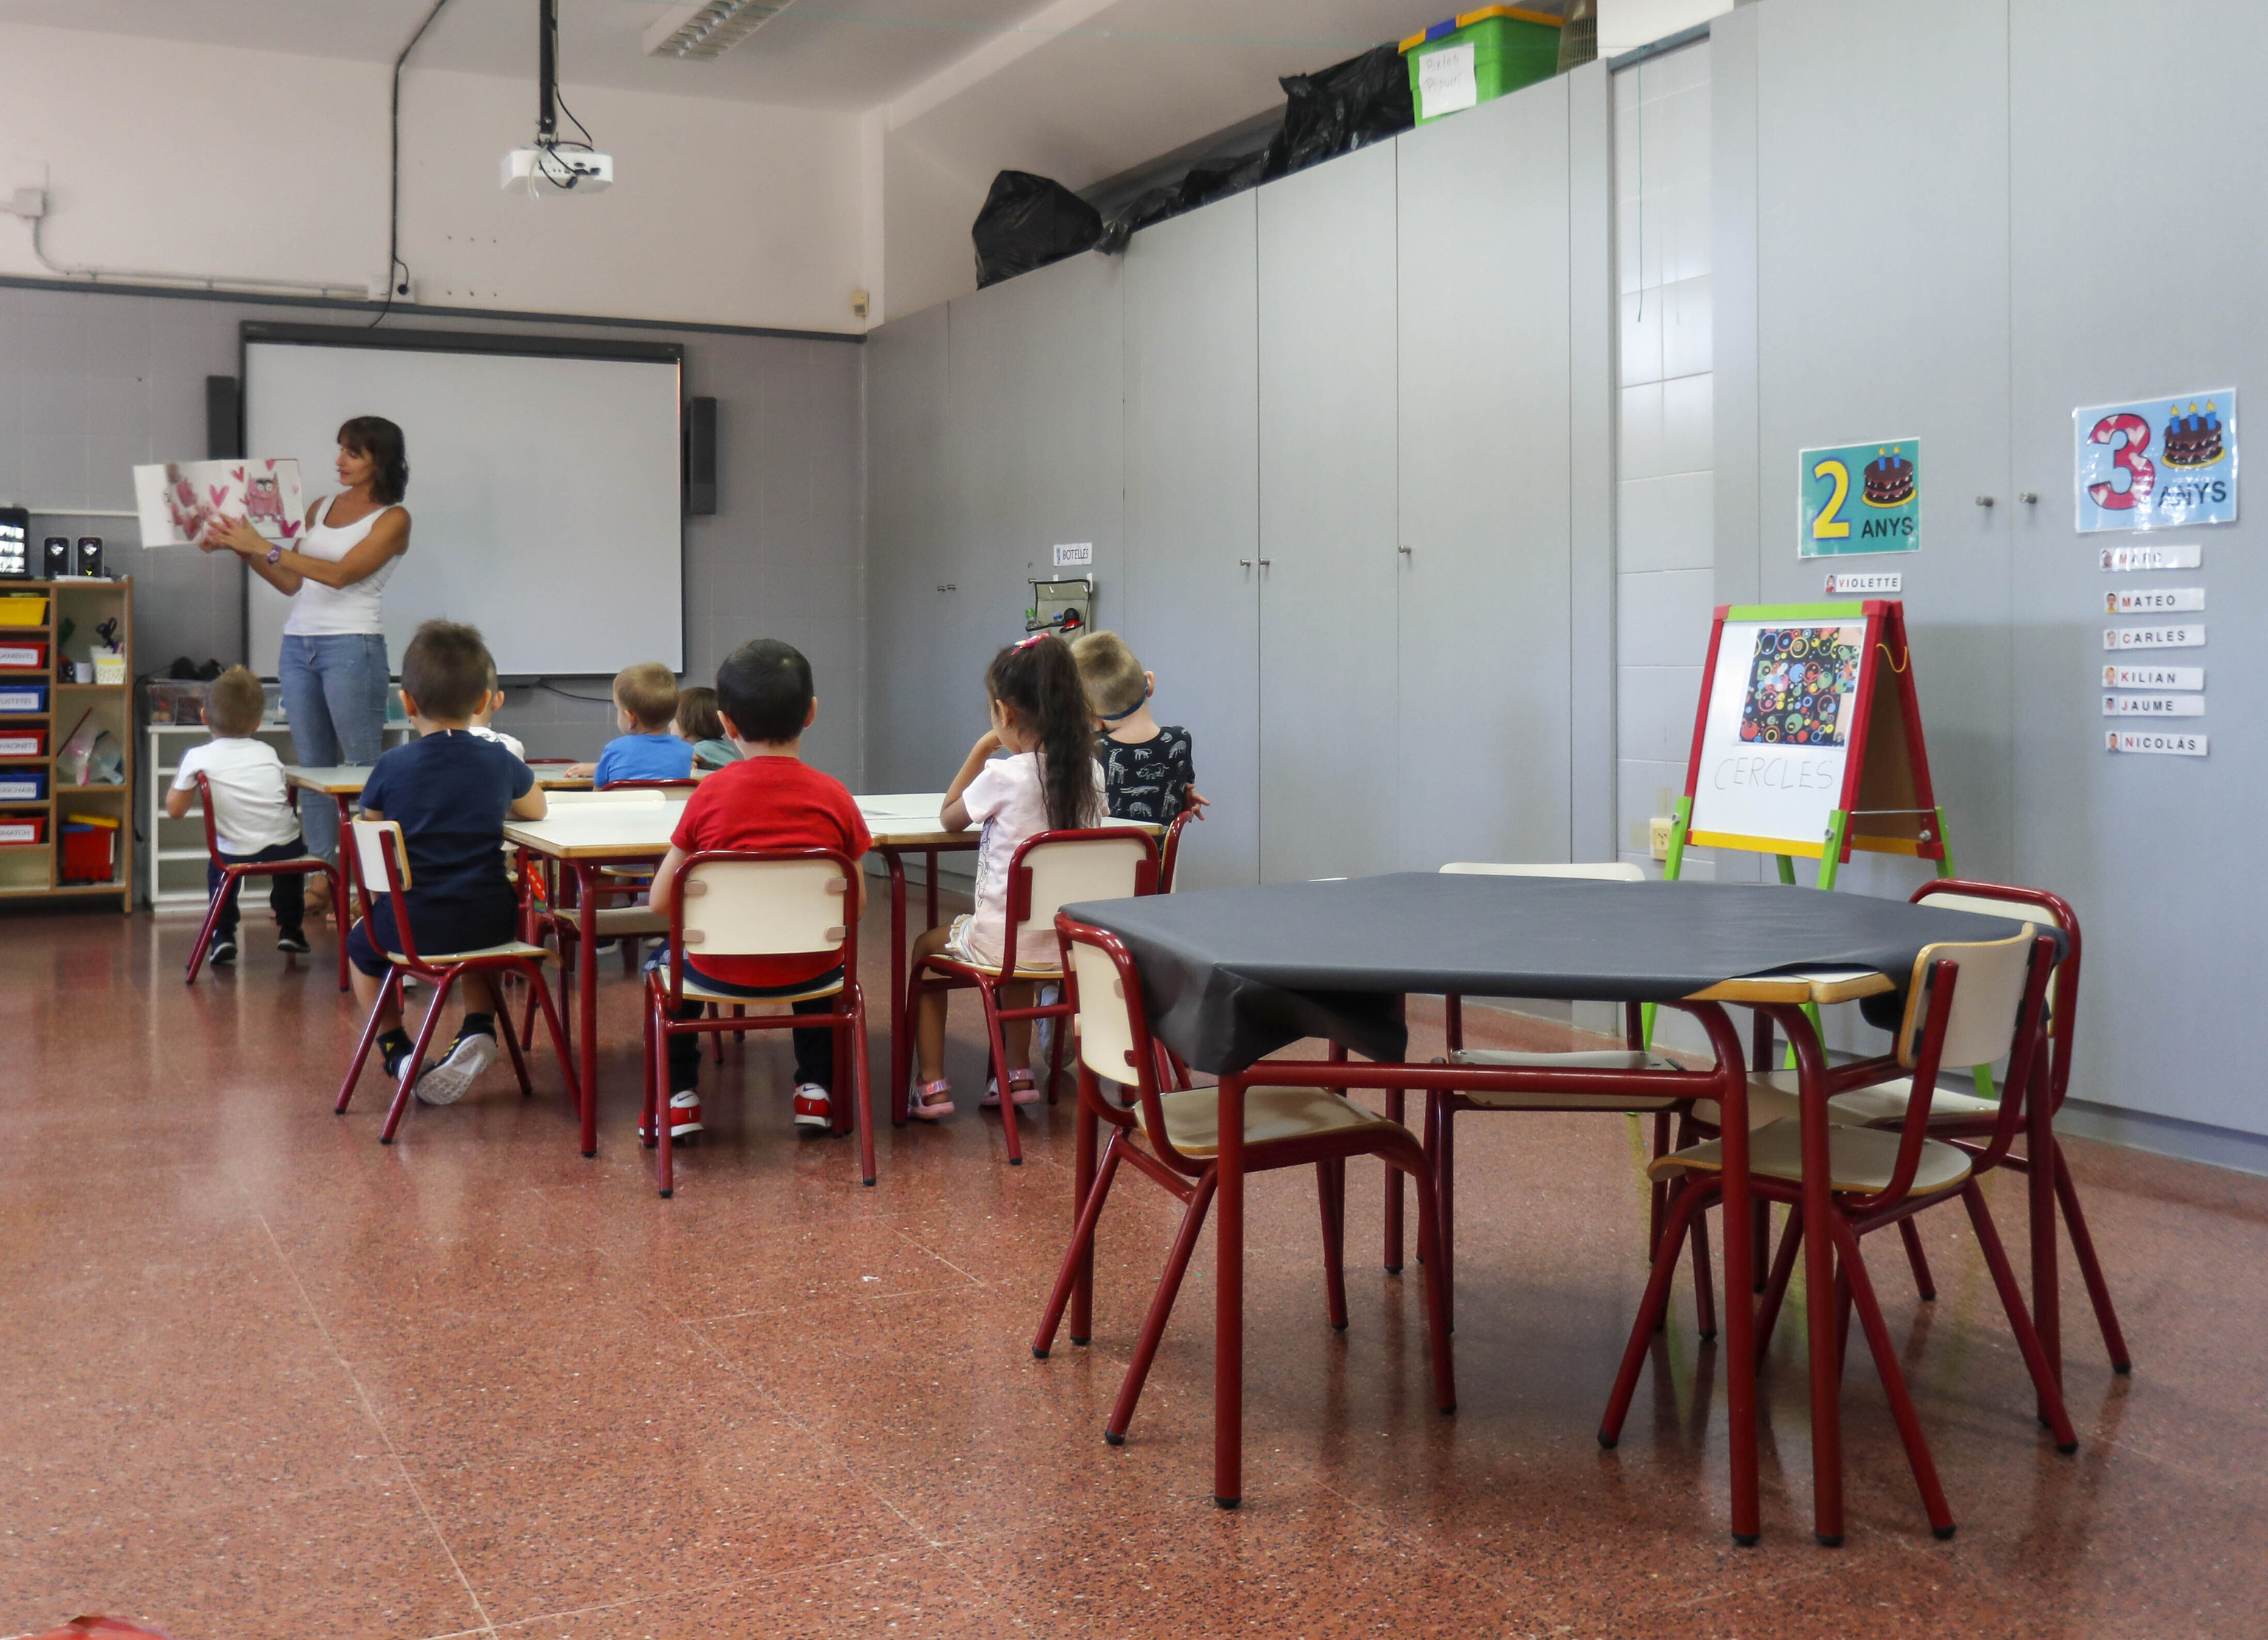 Ocho alumnos por clase en el colegio público Bertomeu Llorens i Royo de Catarroja (Valencia).